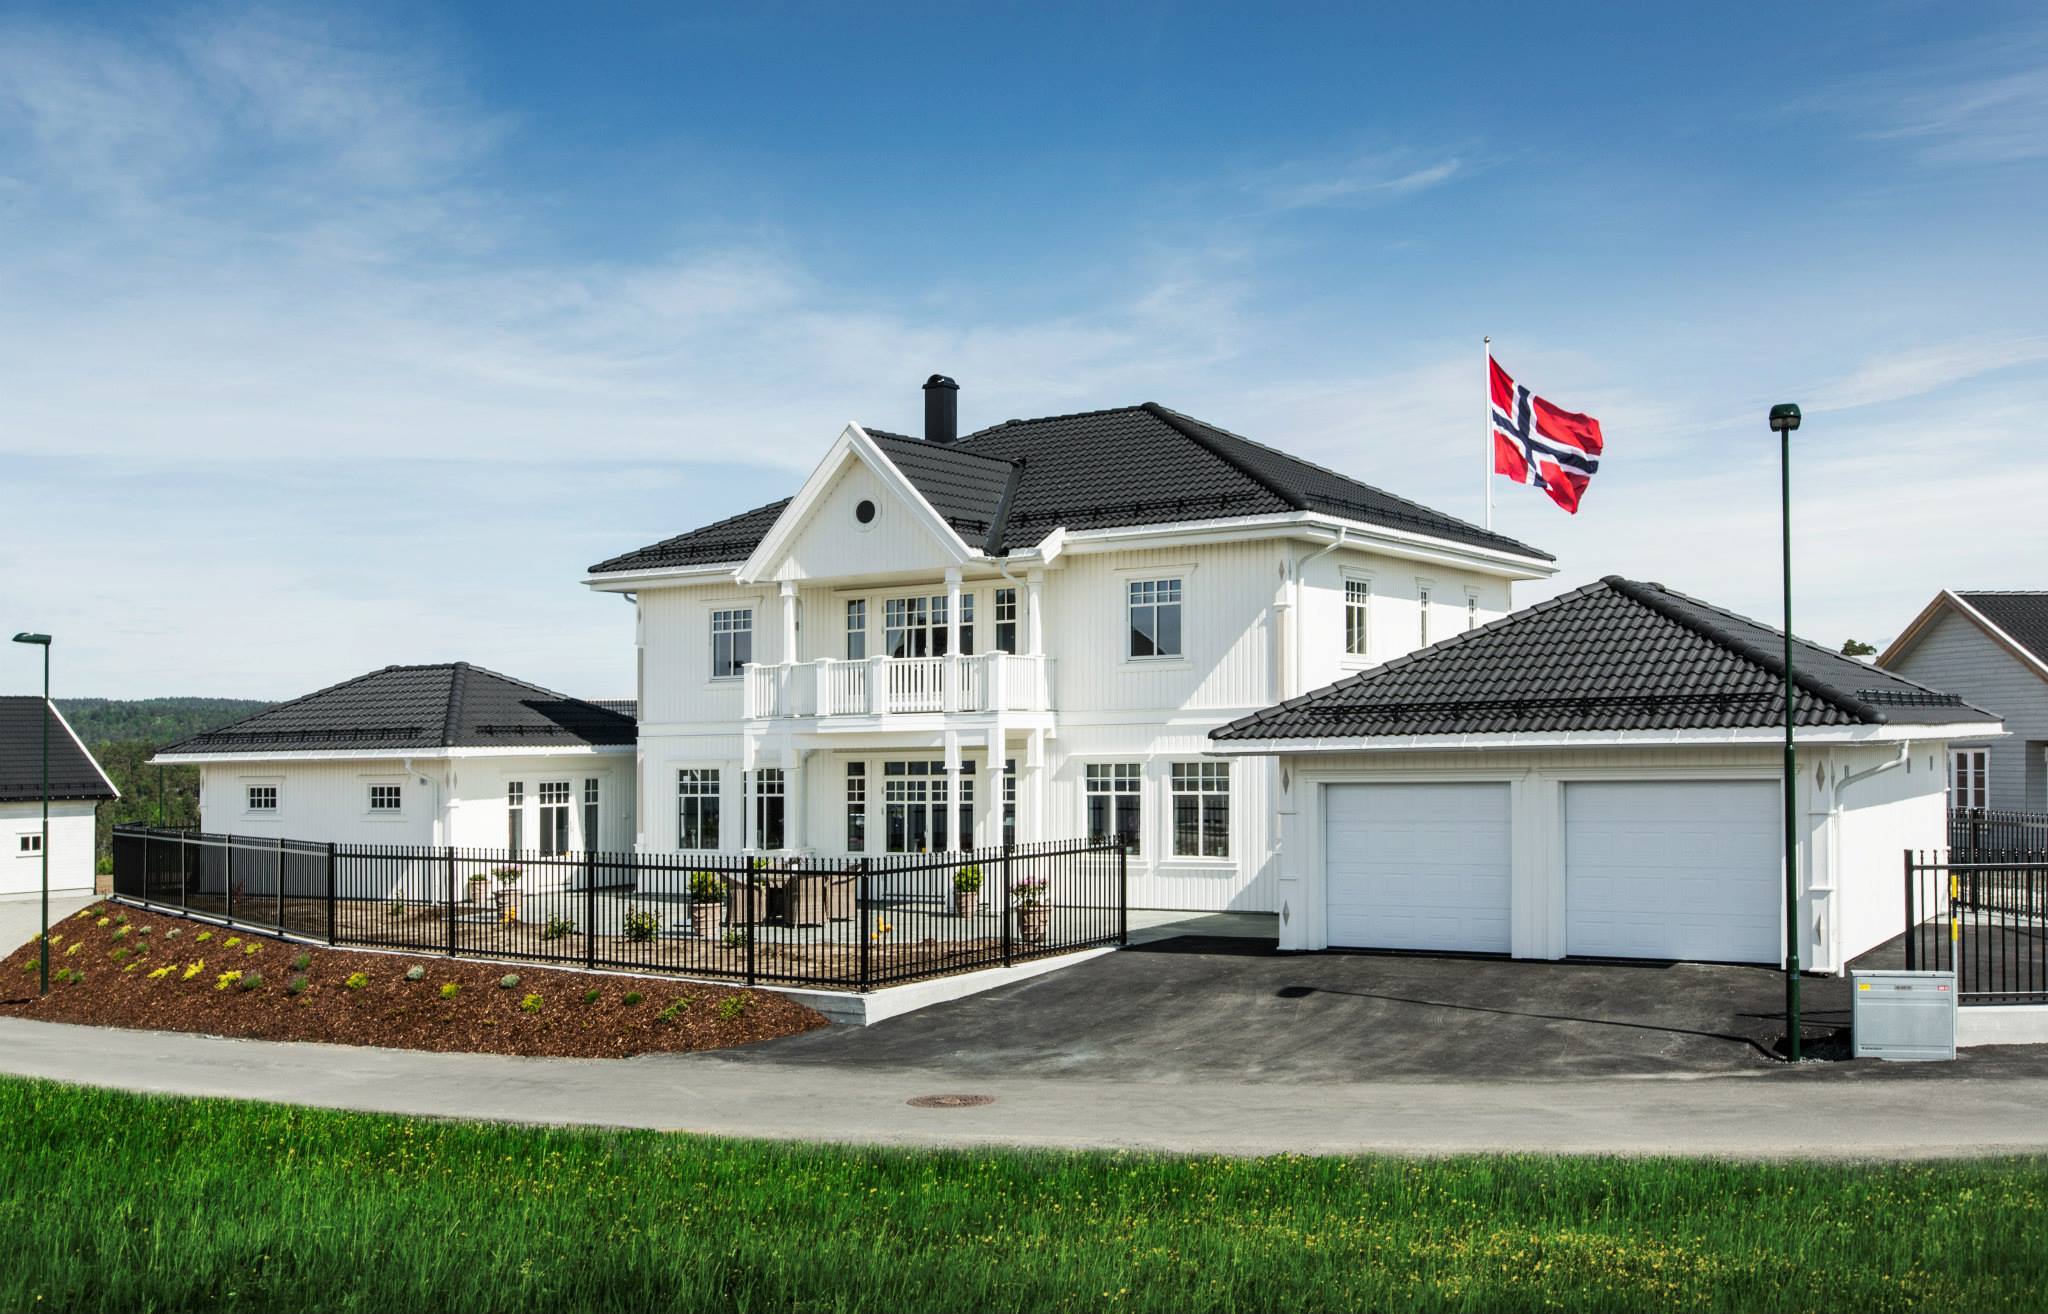 Kredyt Mieszkaniowy w Norwegii | Wszystko, co trzeba wiedzieć o rynku nieruchomości w Norwegii | localmarket.no